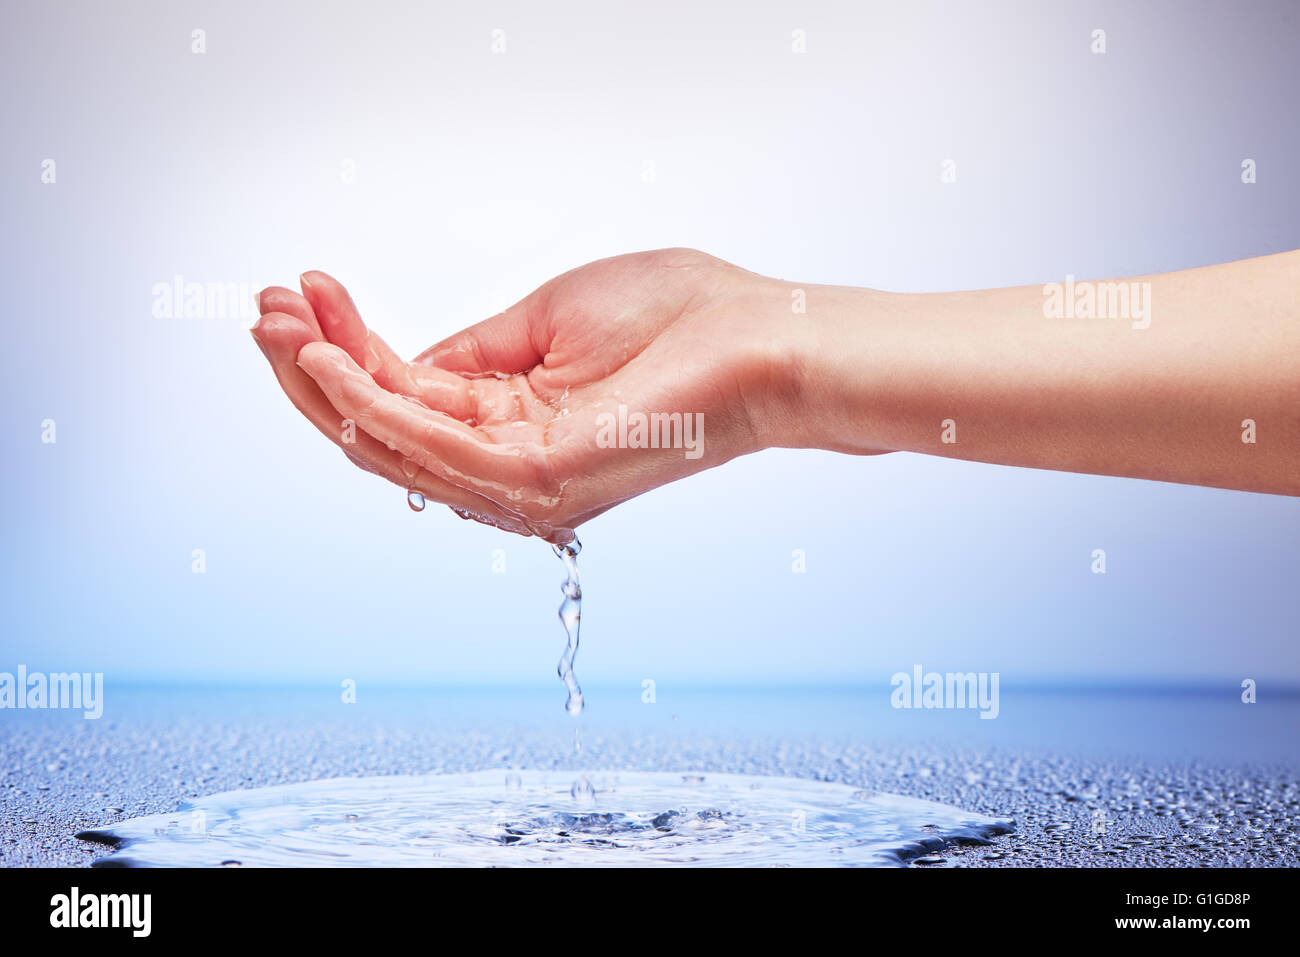 L'acqua che cade dalla mano womans su bianco e lo sfondo blu Foto Stock